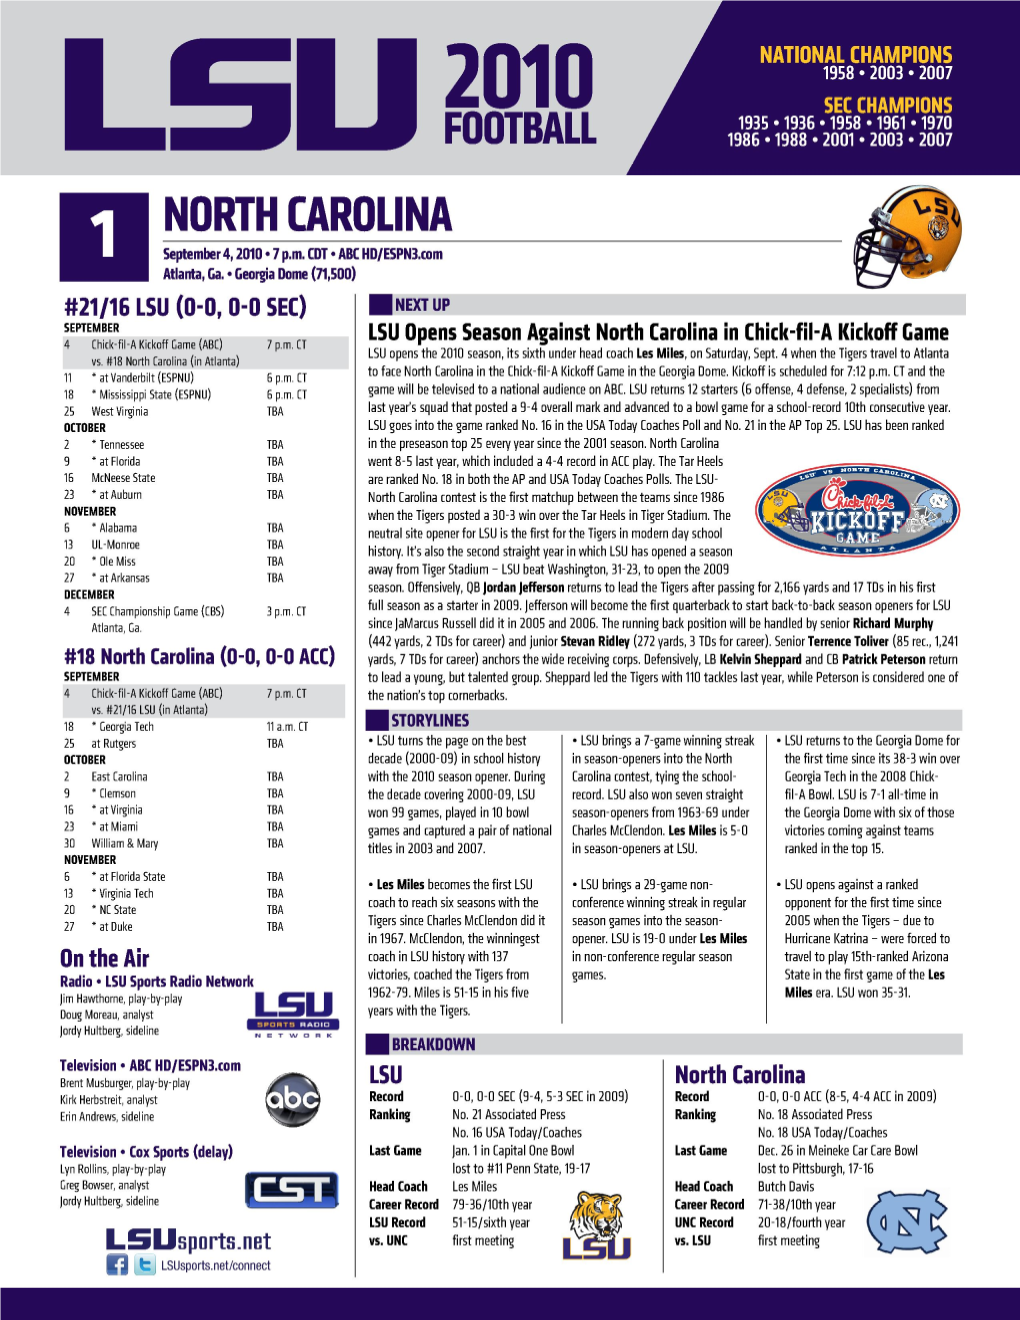 Game 1 Notes Vs. North Carolina